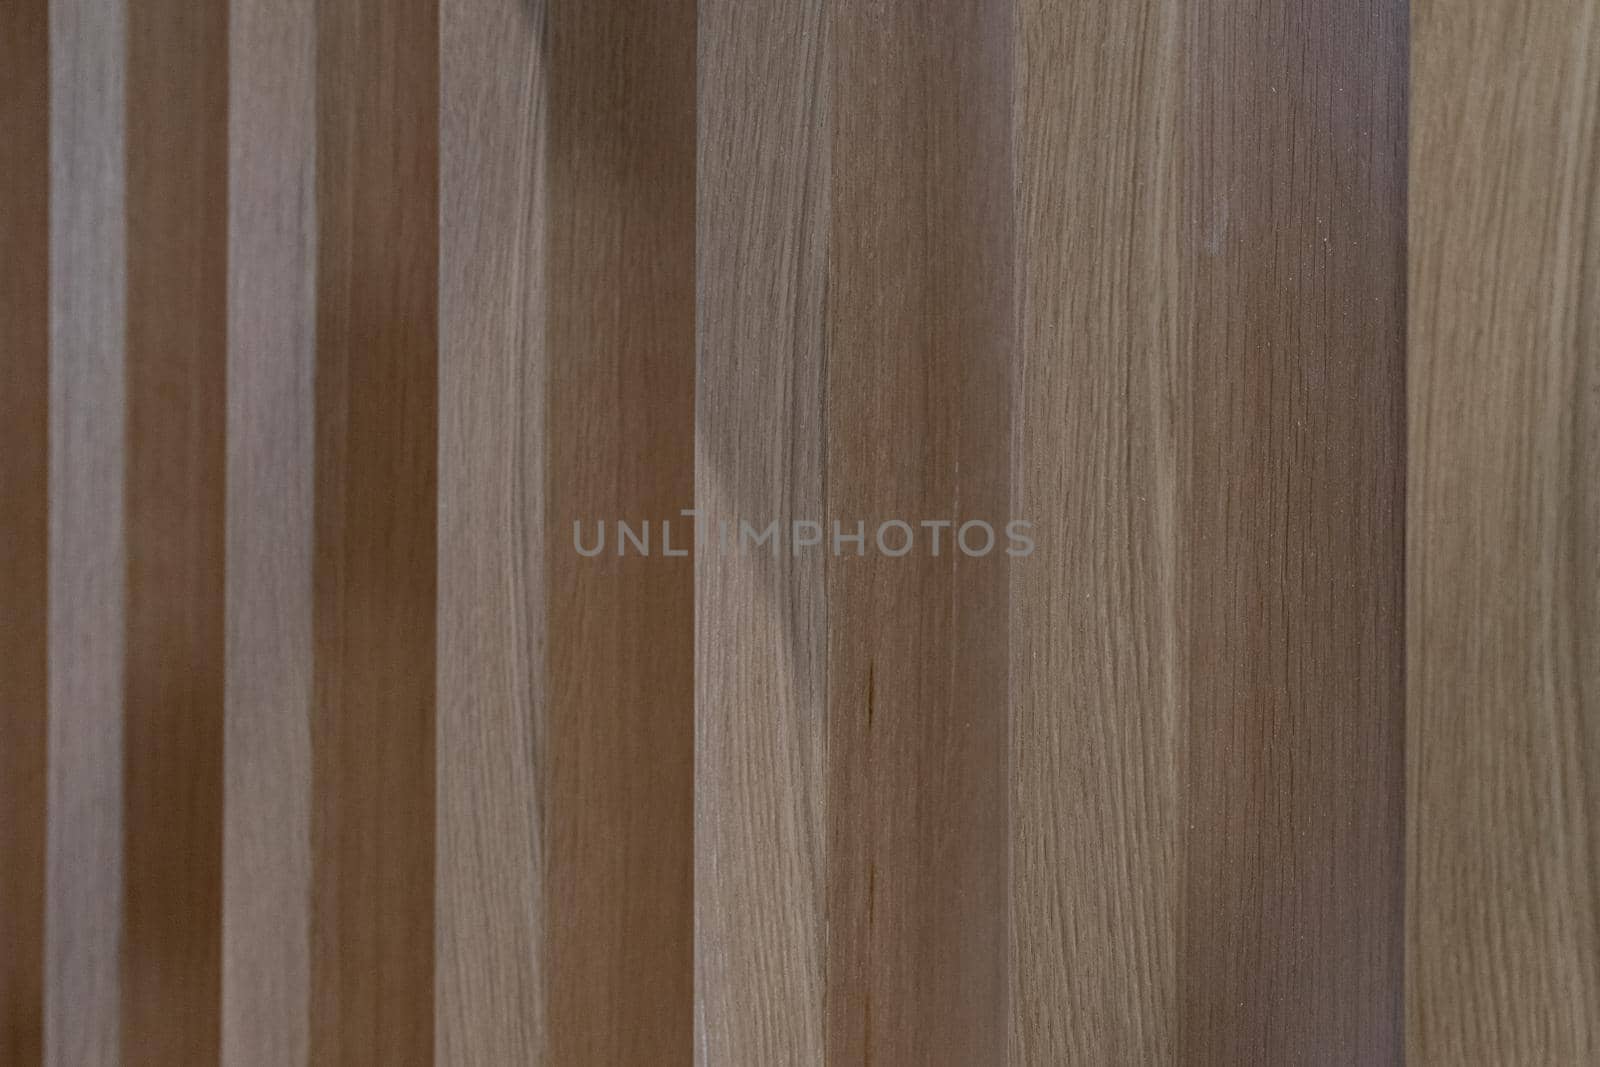 Wooden dark textured background. Wall of wooden bars by Serhii_Voroshchuk